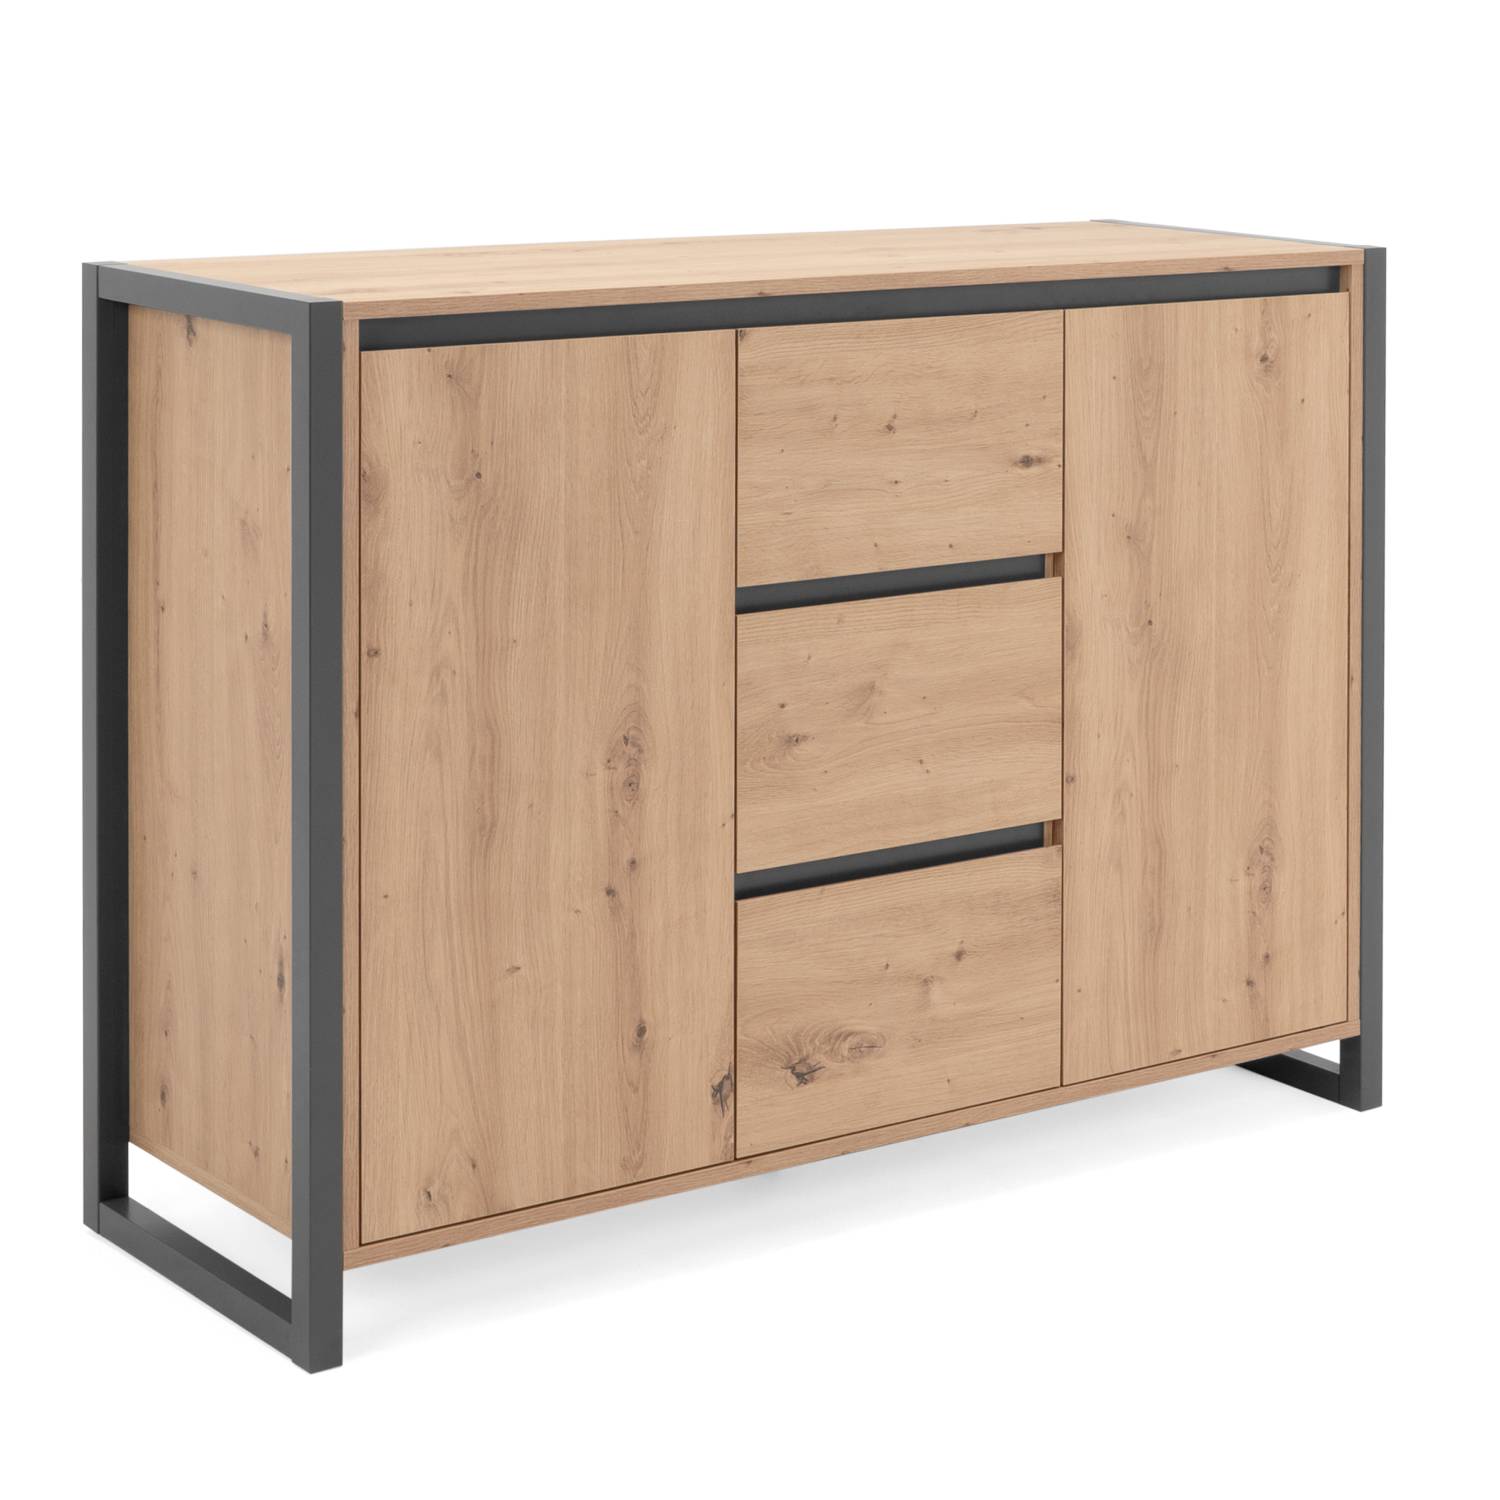 Sideboard Cupboard Storage Cabinet 3 Drawers Wood Oak Living Room Industrial Look